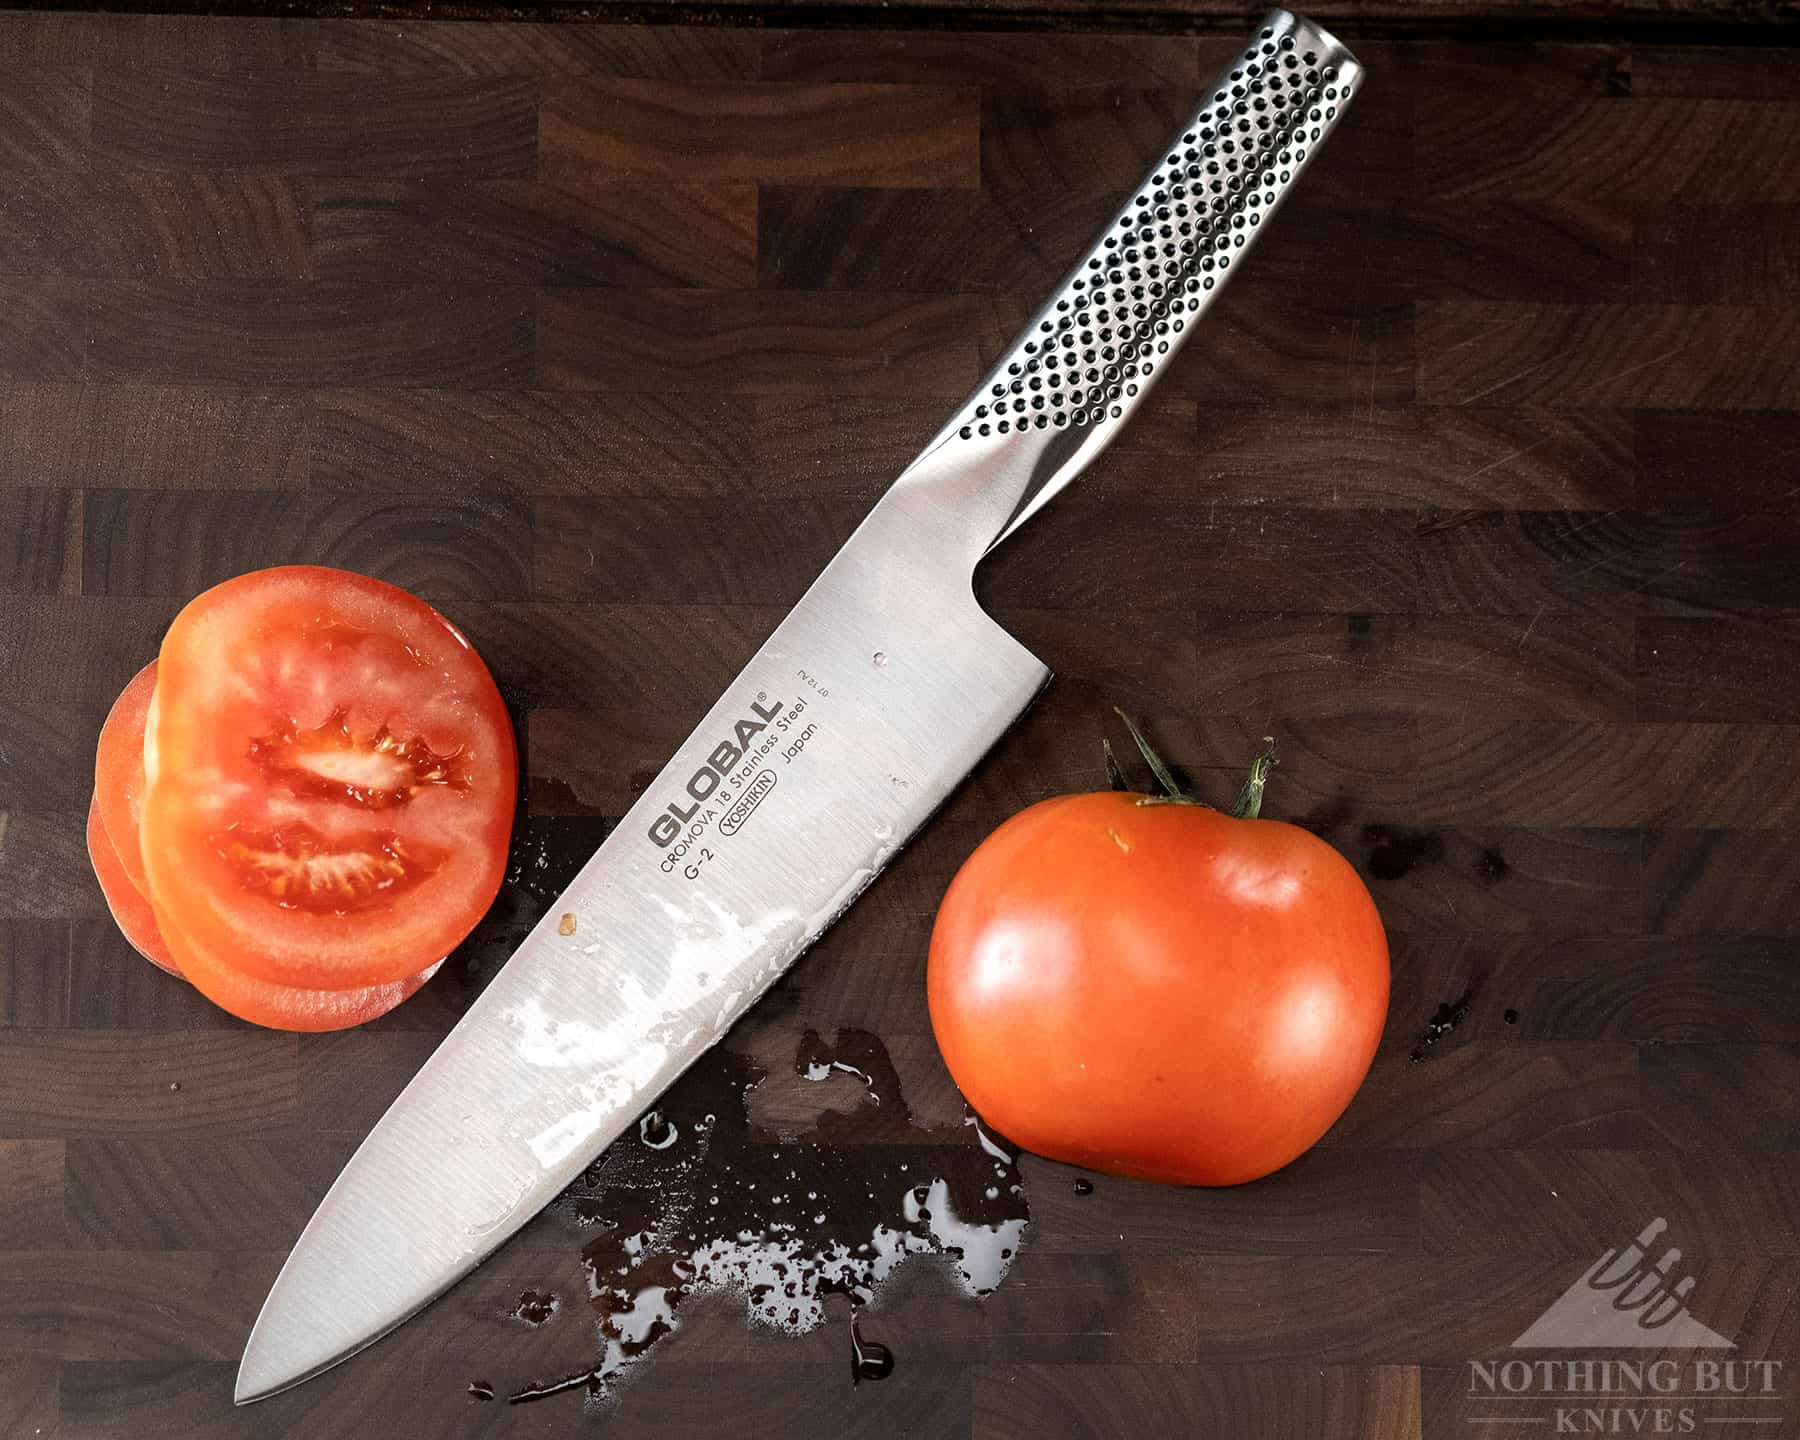 https://www.nothingbutknives.com/wp-content/uploads/2022/06/Global-Chef-Knife.jpg